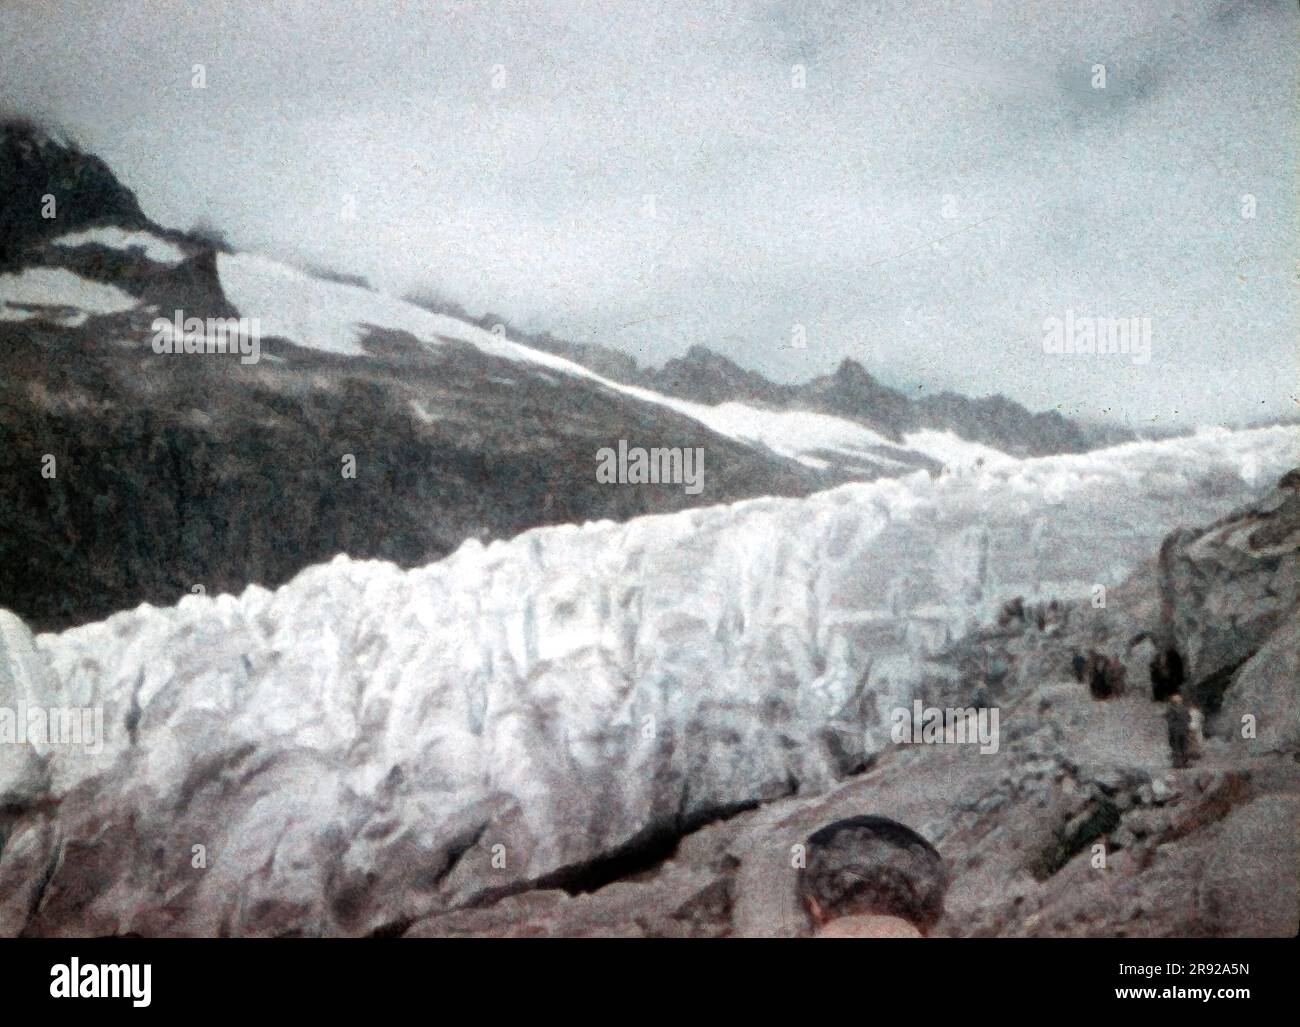 Alla fine degli anni '1950, vista del ghiacciaio del Rodano nelle Alpi svizzere - Tieralplistock. Il ghiaccio del ghiacciaio era alto più di 6 metri. Pellicola per vetrini Minox vintage da 8 mm. Foto Stock